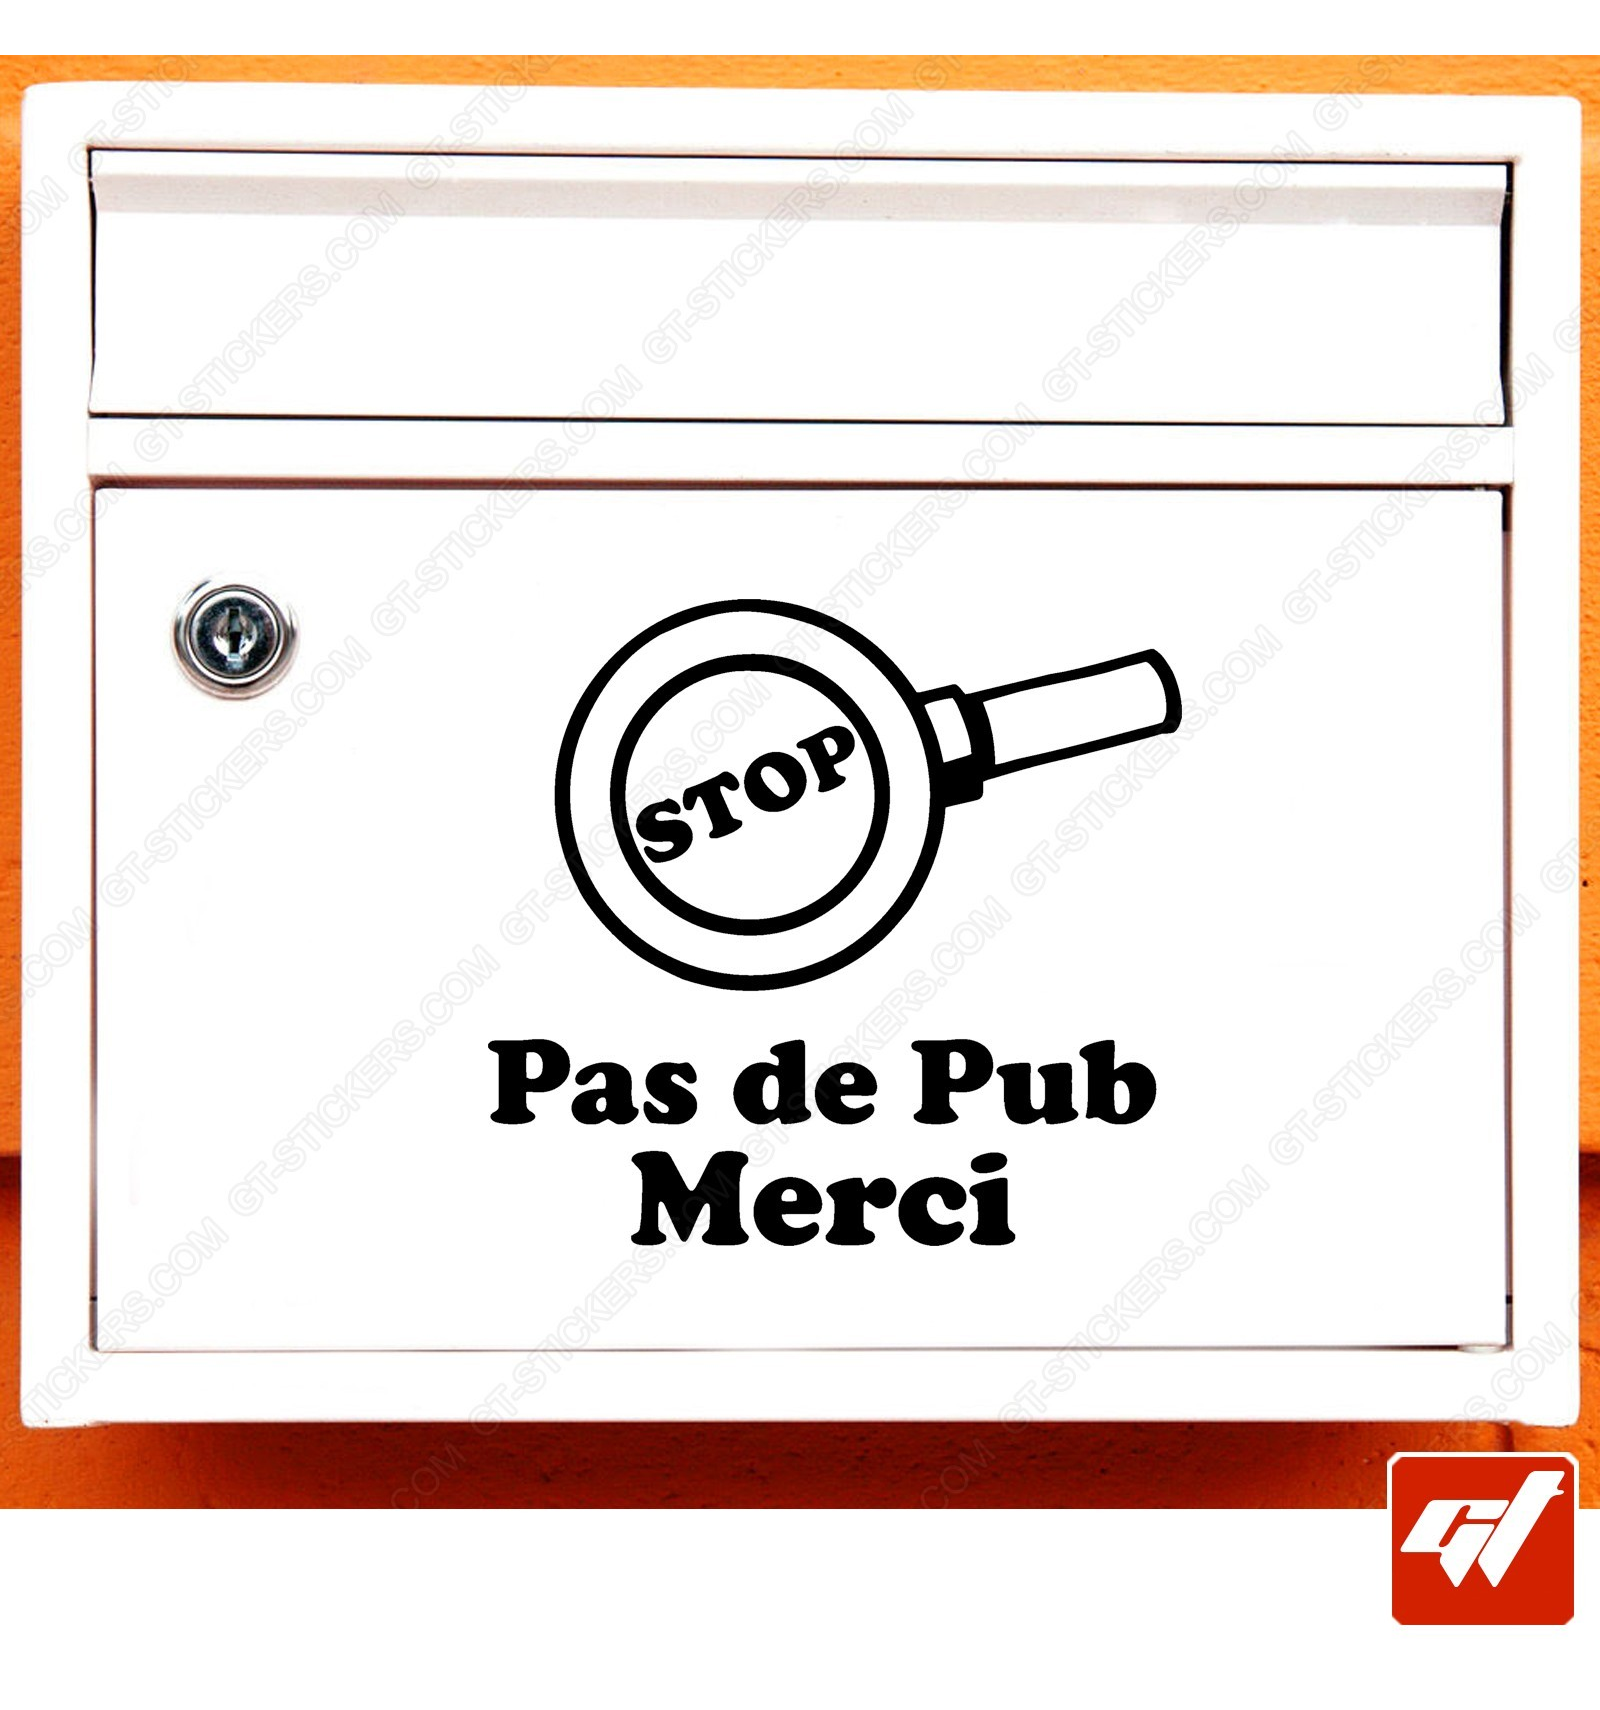 Sticker STOP PUB Décoratif pour boite aux lettres - Gamme 3M Pro